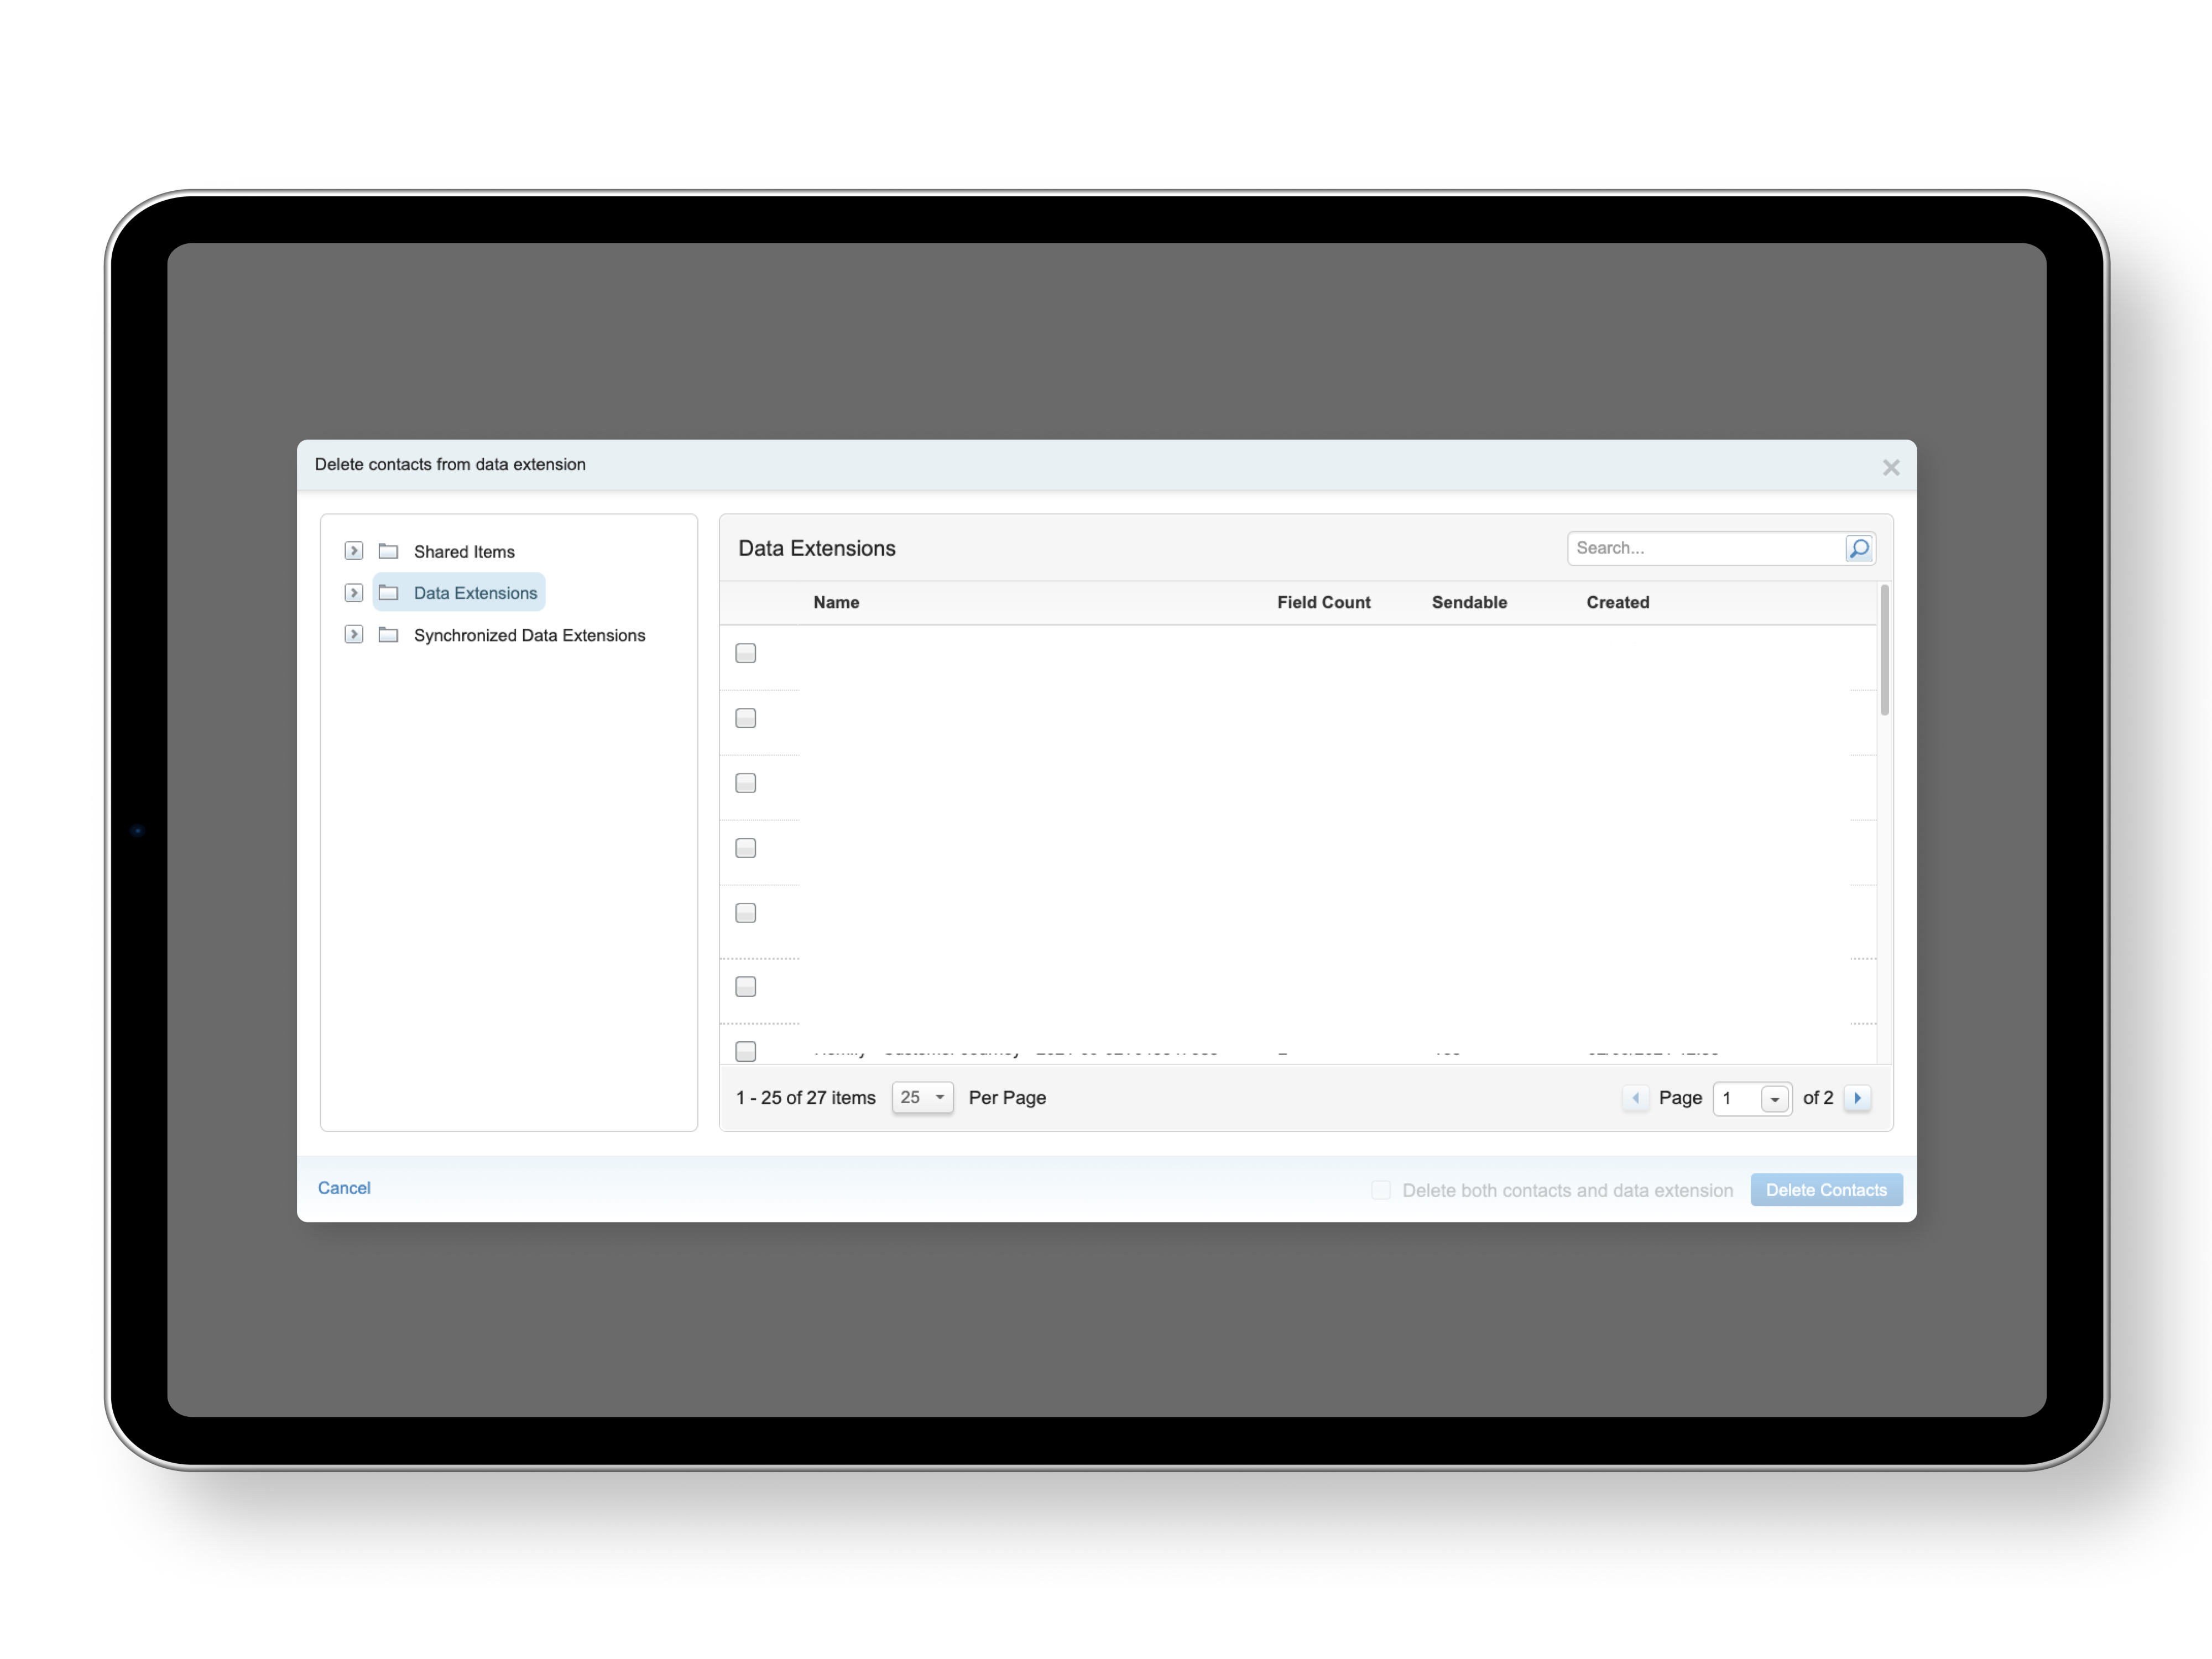 Es ist ein Screenshot von einem Data Extensions Fenster innerhalb der Salesforce Marketing Maske zu sehen. Neben der Data Extensions können Shared Items und Synchronized Data Exetensions ausgewählt werden. 